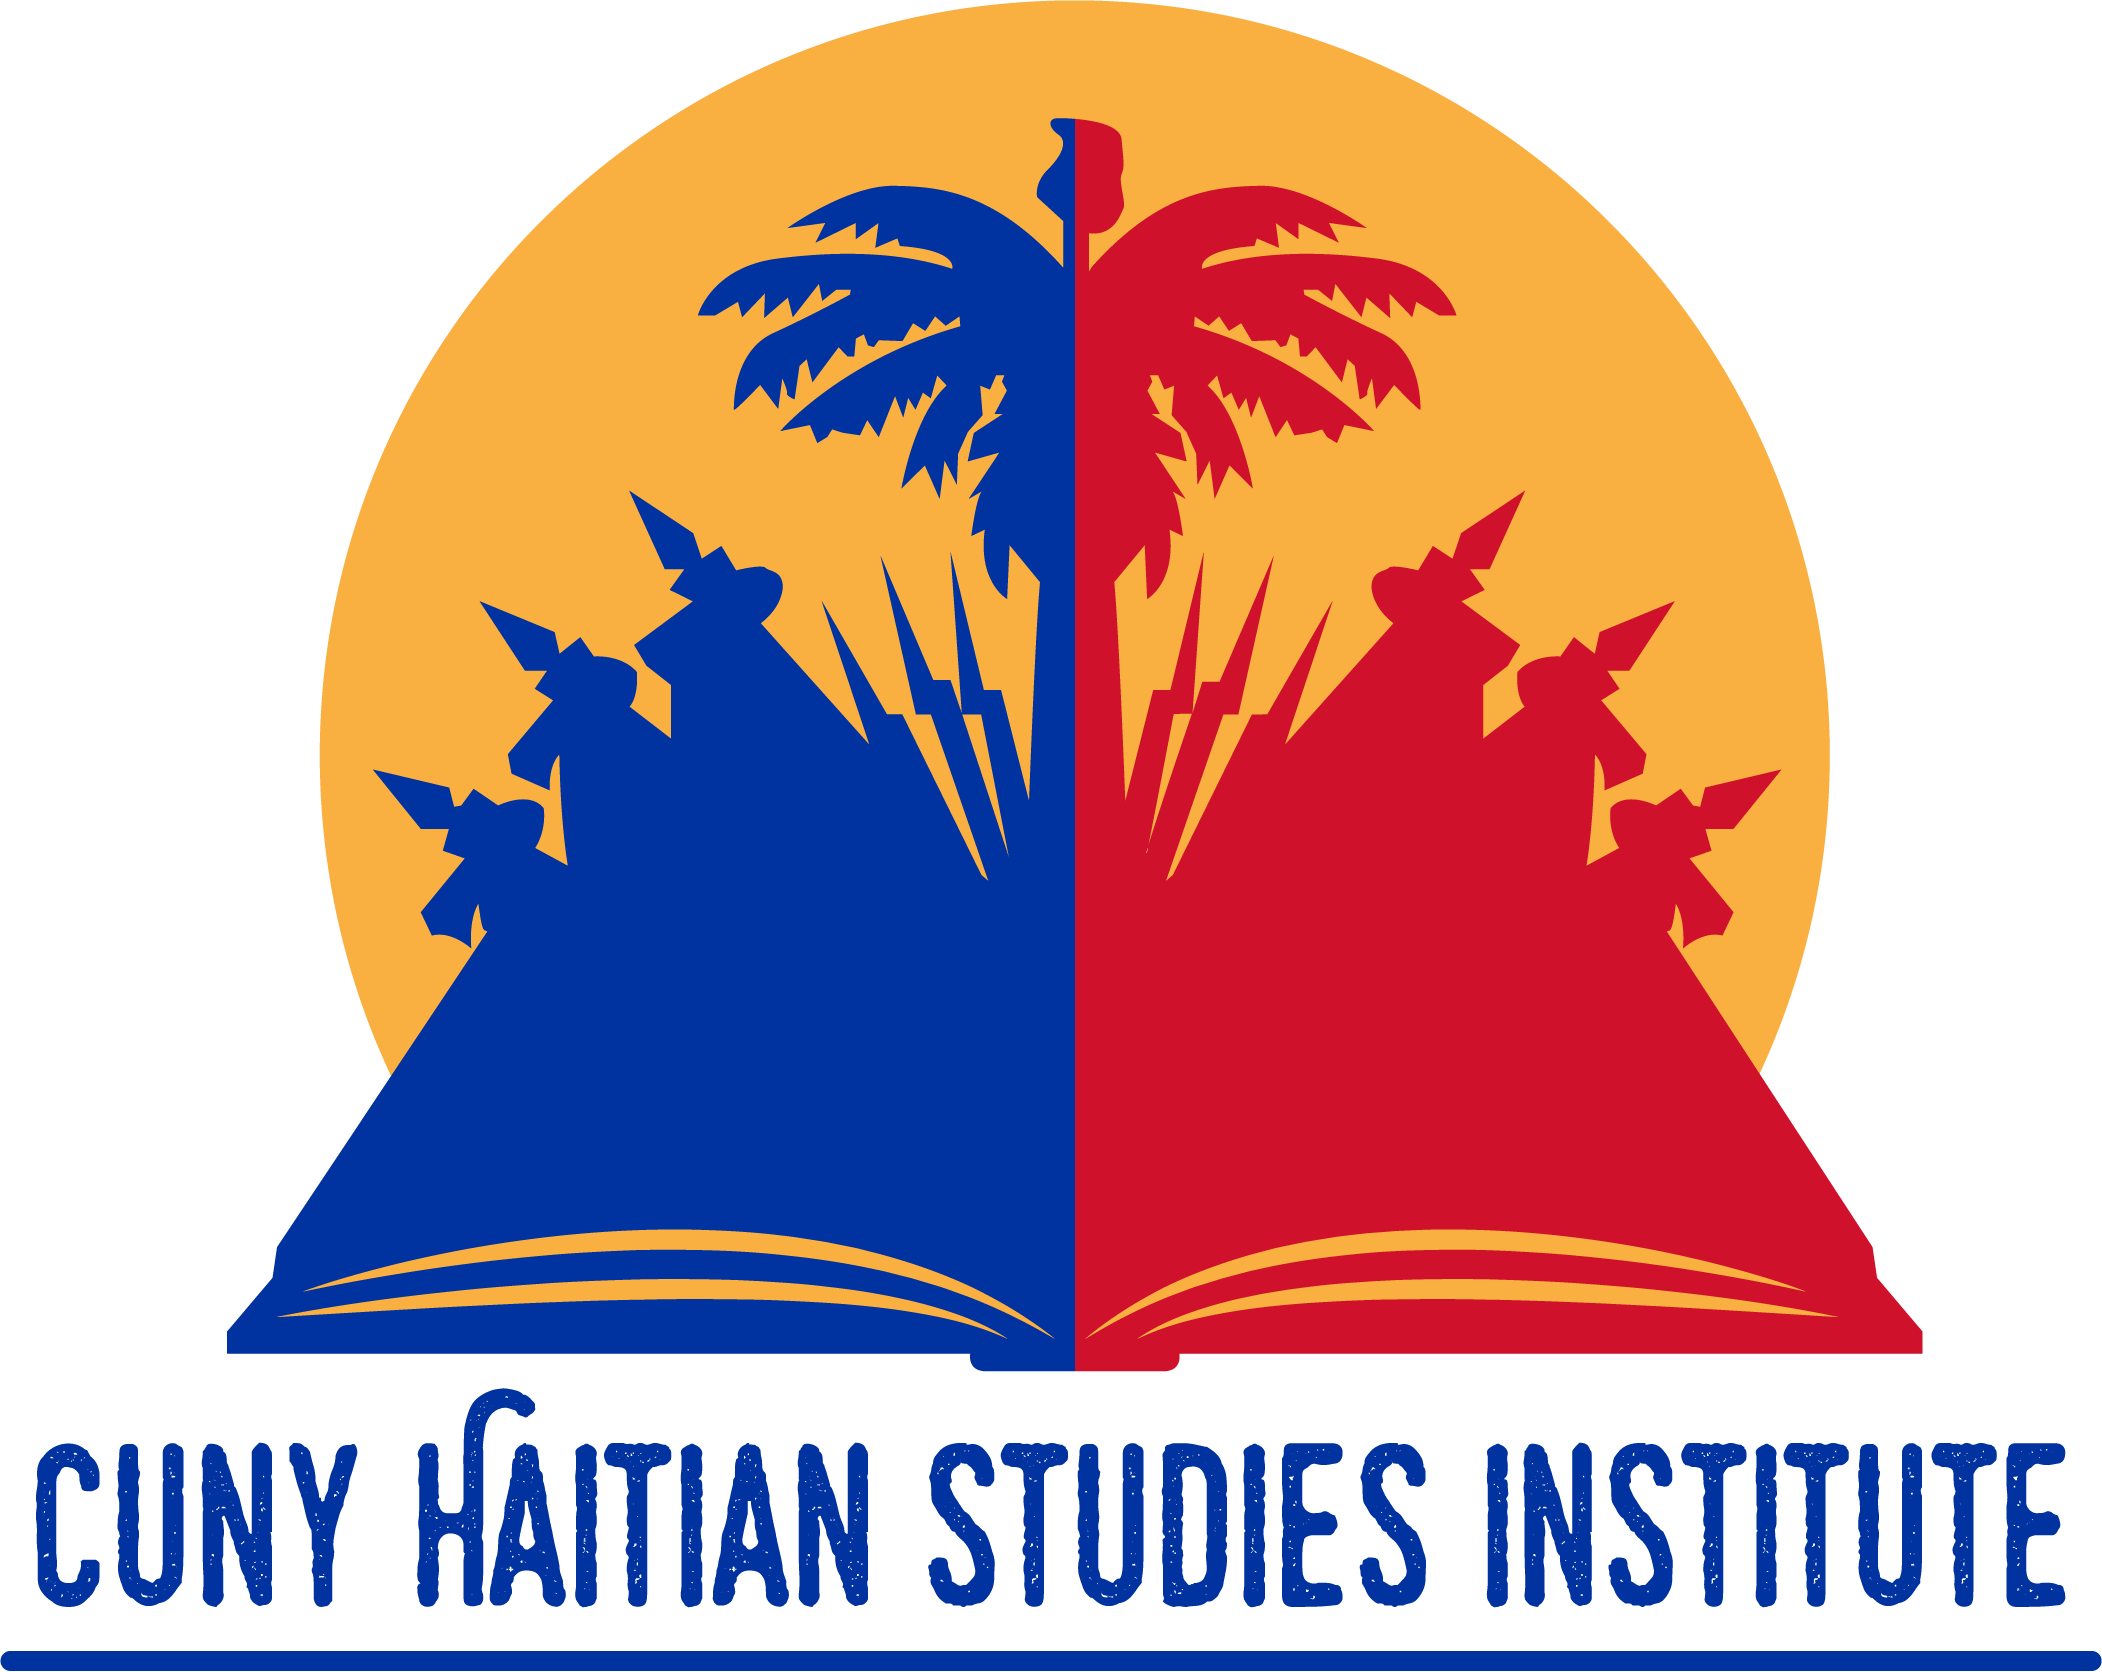 Haitian Studies Institute